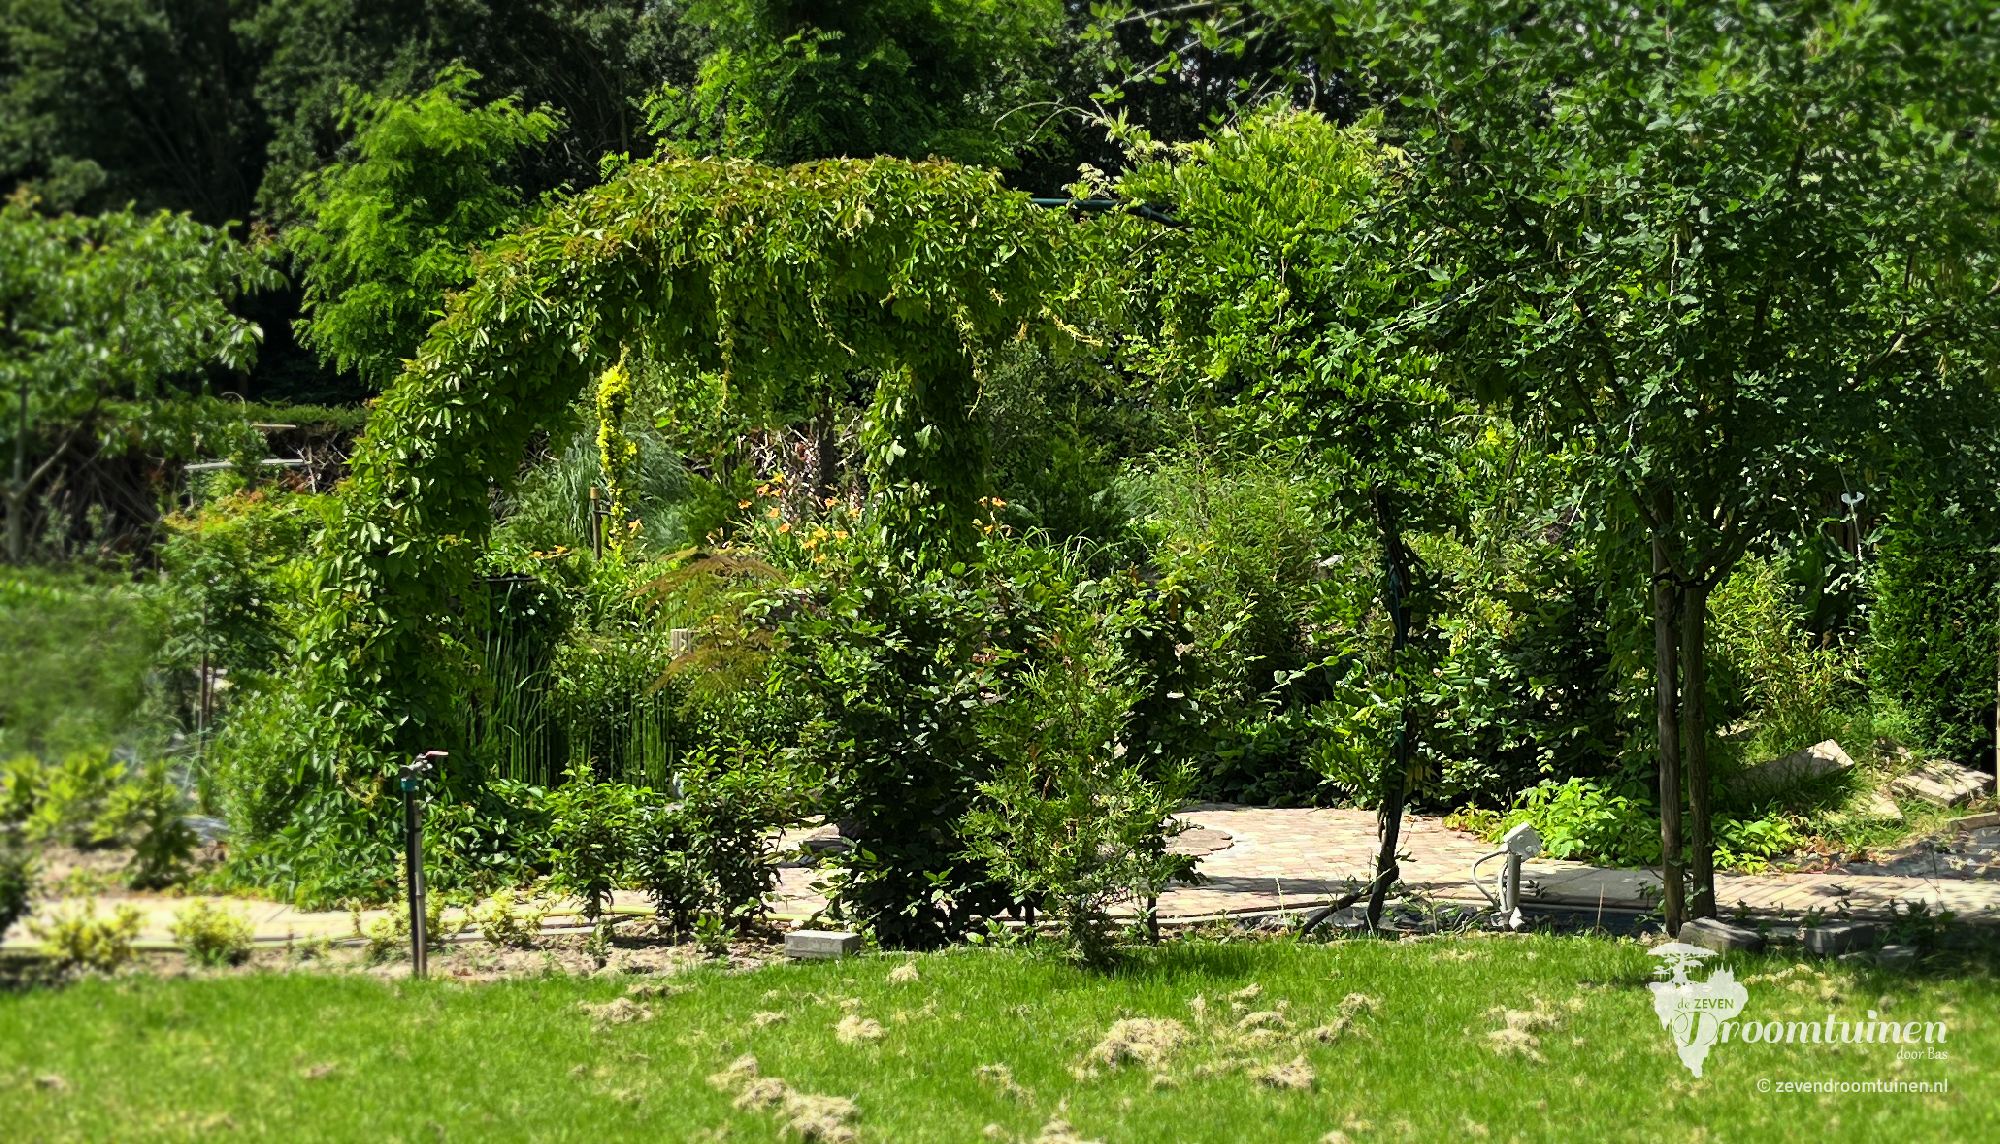 De dikke bladtooien van de wilde wingerd tijdens het zomerseizoen. Gebogen zuilen van groen, afgewisseld met sierlijke gordijnen.